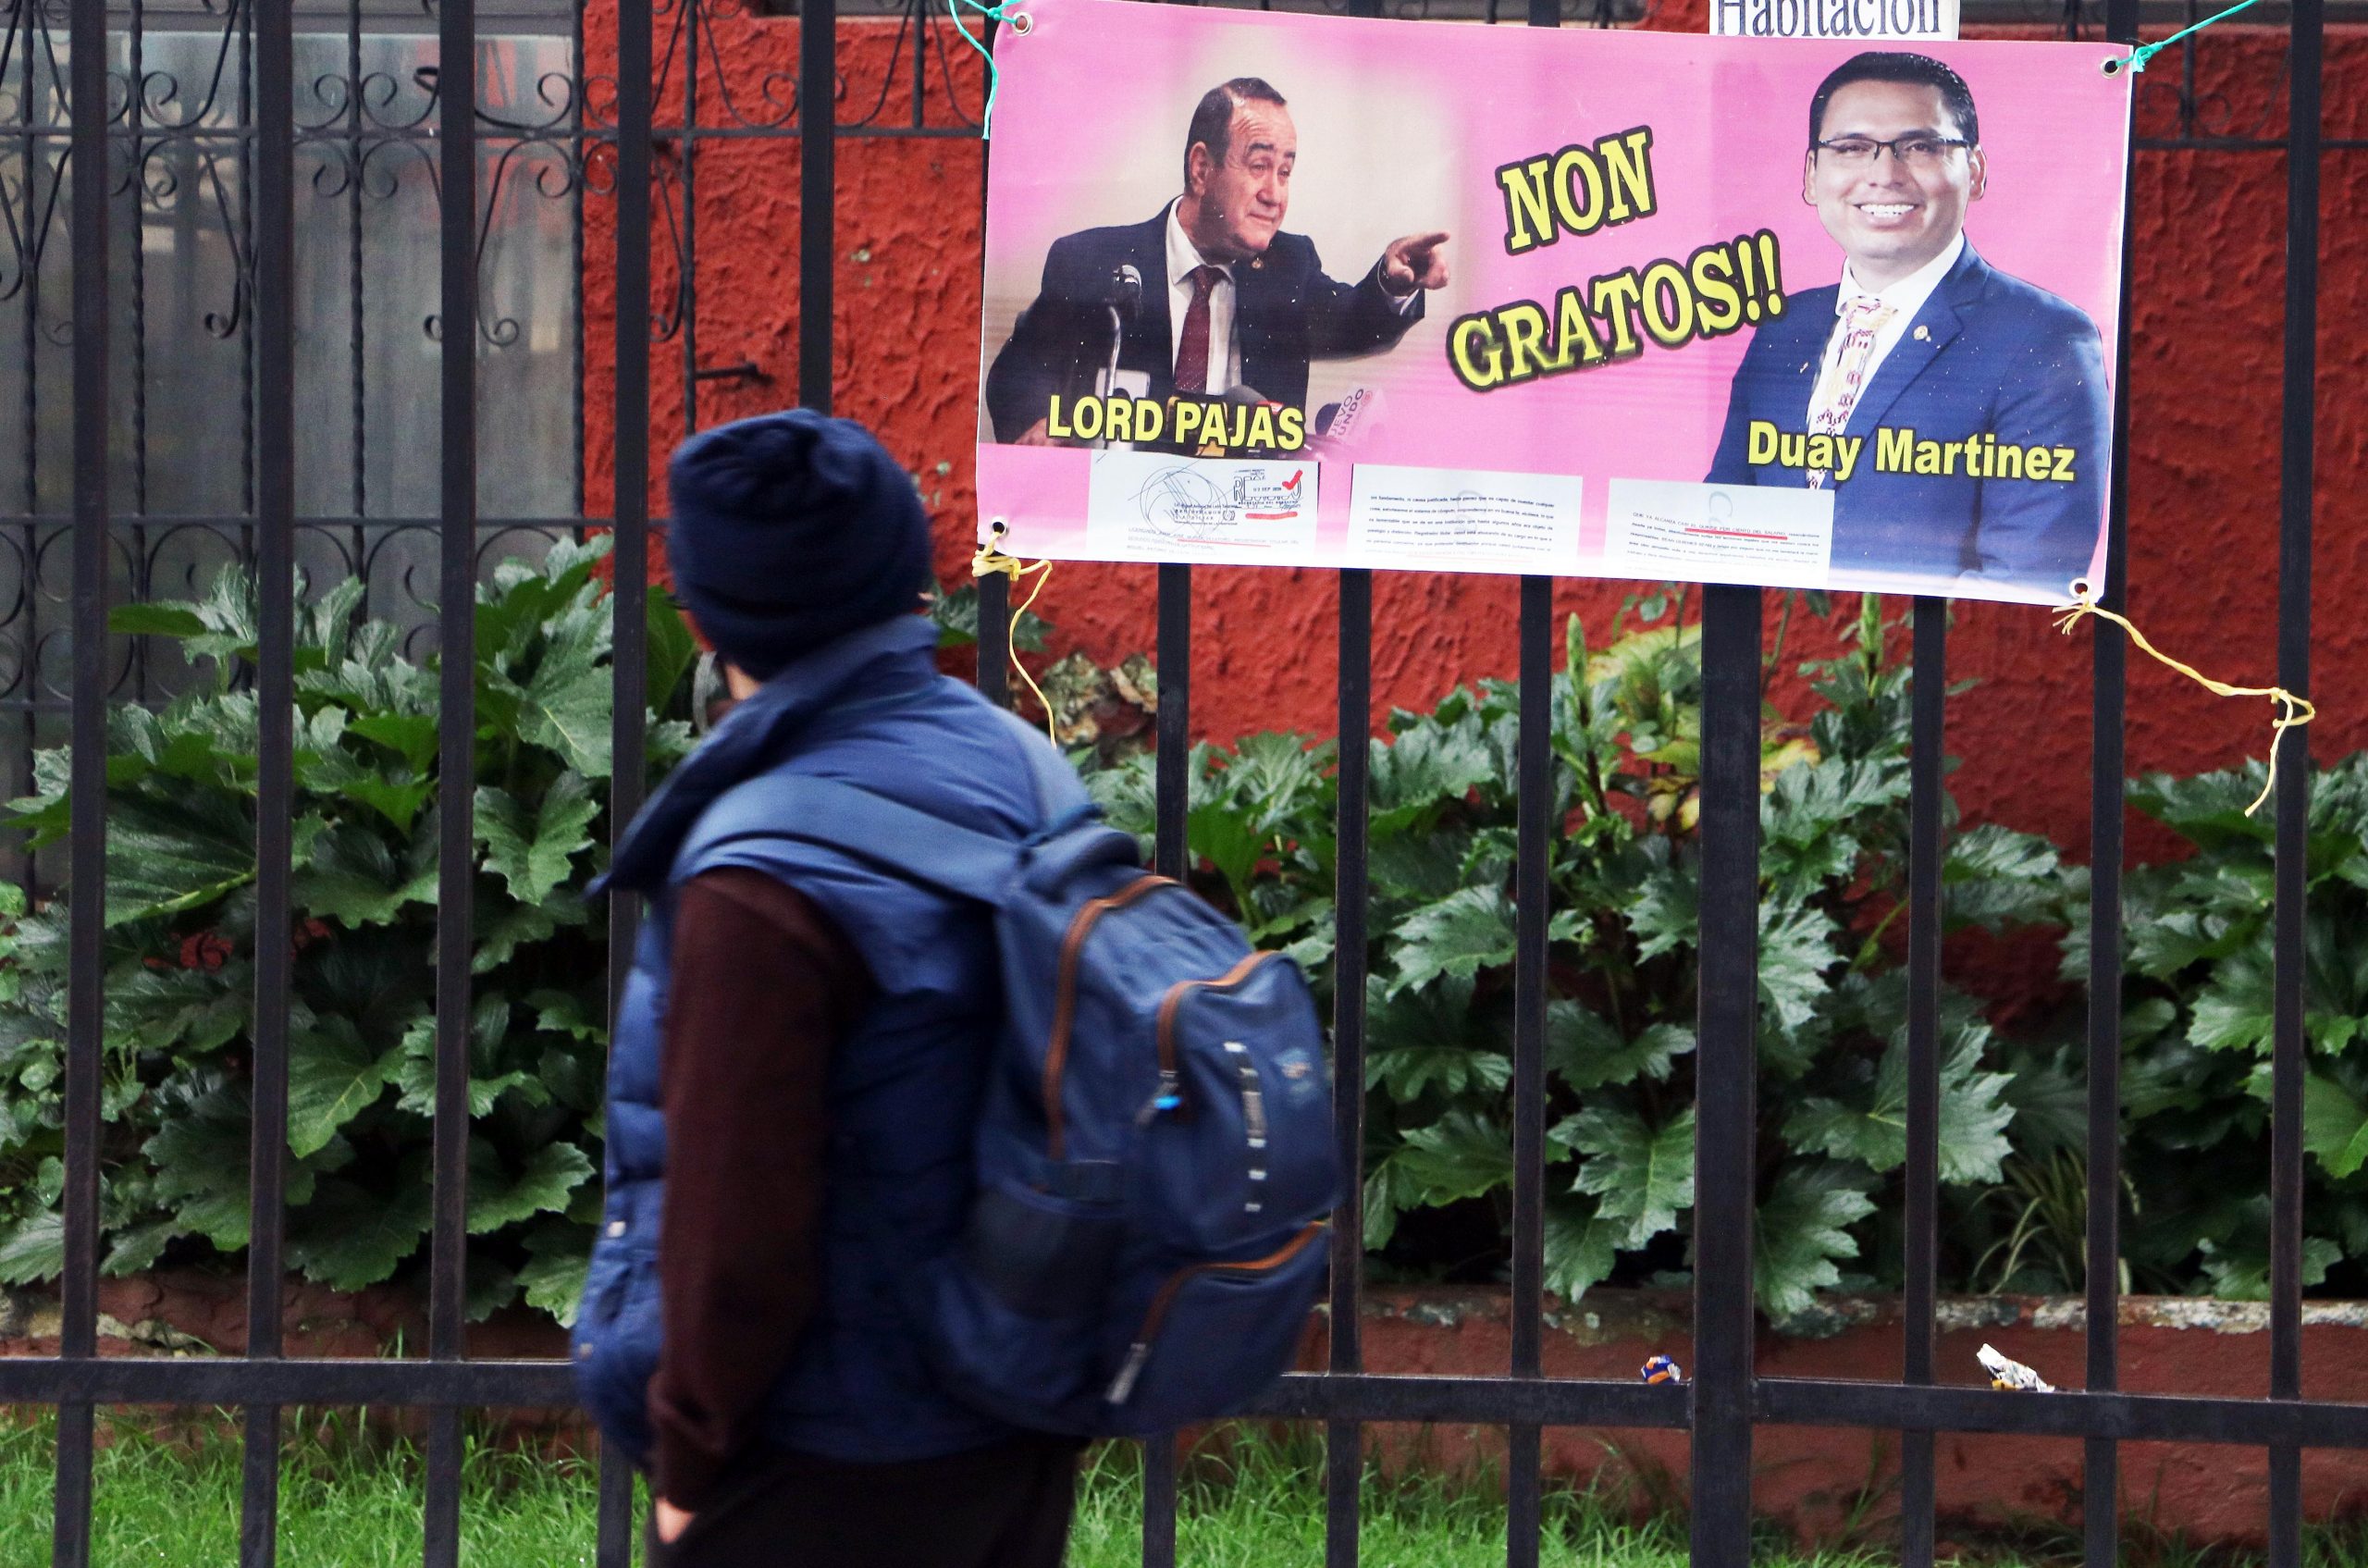 Este lunes aparecieron mantas colgadas en Quetzaltenango, en contra del Presidente Alejandro Giammattei y contra el diputado Duay Martínez, exigiendo su renuncia por actos de corrupción en el Segundo Registro de la Propiedad. (Foto: Carlos Ventura)